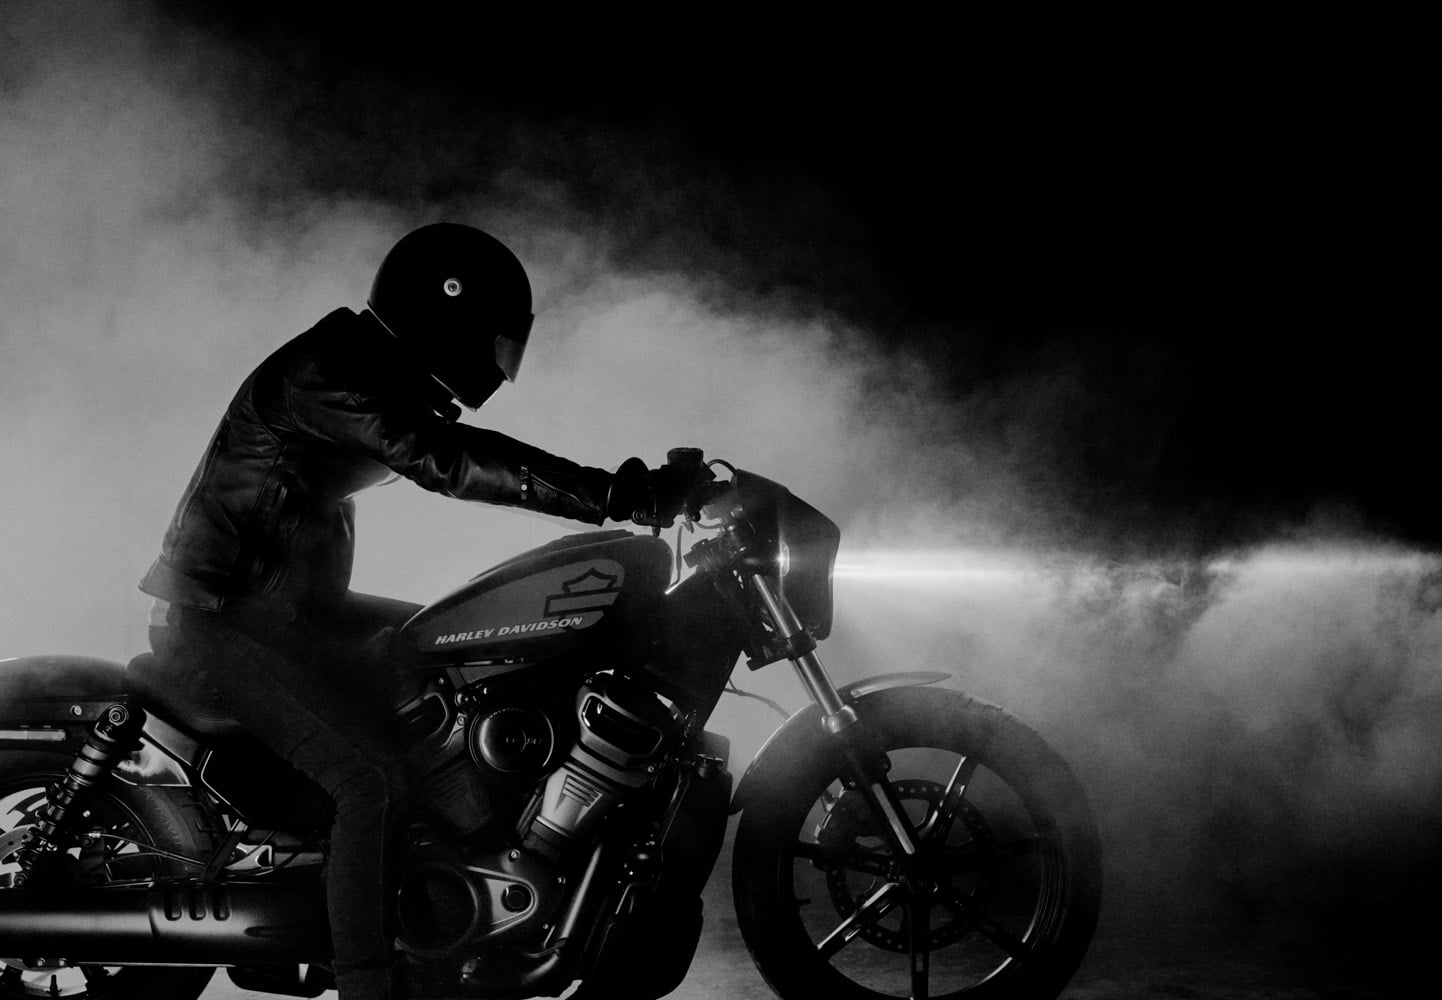 Le nouveau modèle Harley-Davidson Nightster. marque le début d'un nouveau chapitre dans l'histoire des motos Sportster.